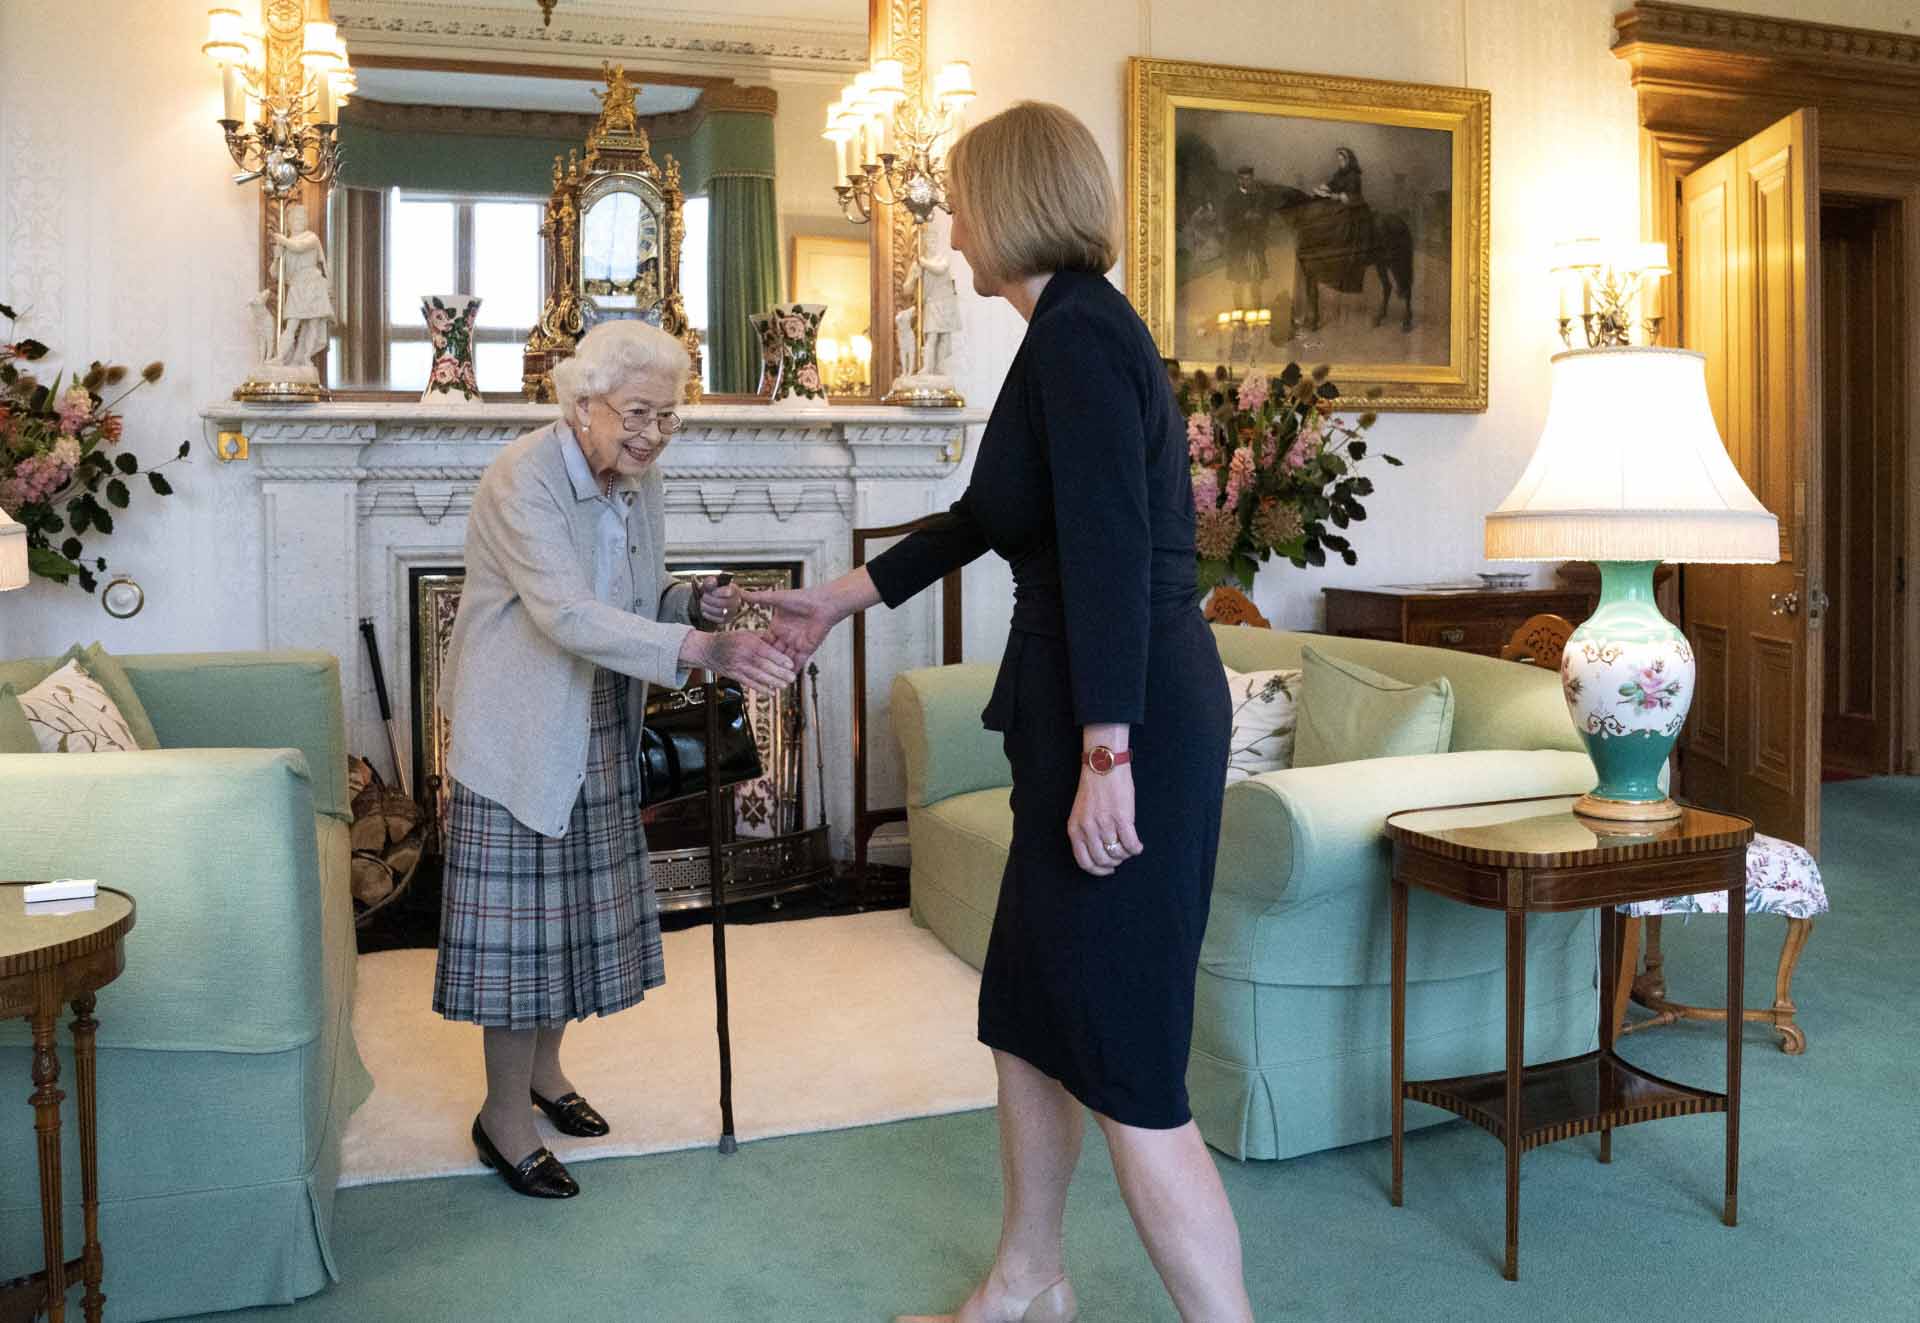 La reina Isabel II reaparece en Balmoral tras dos meses desaparecida para reunirse con Liz Truss